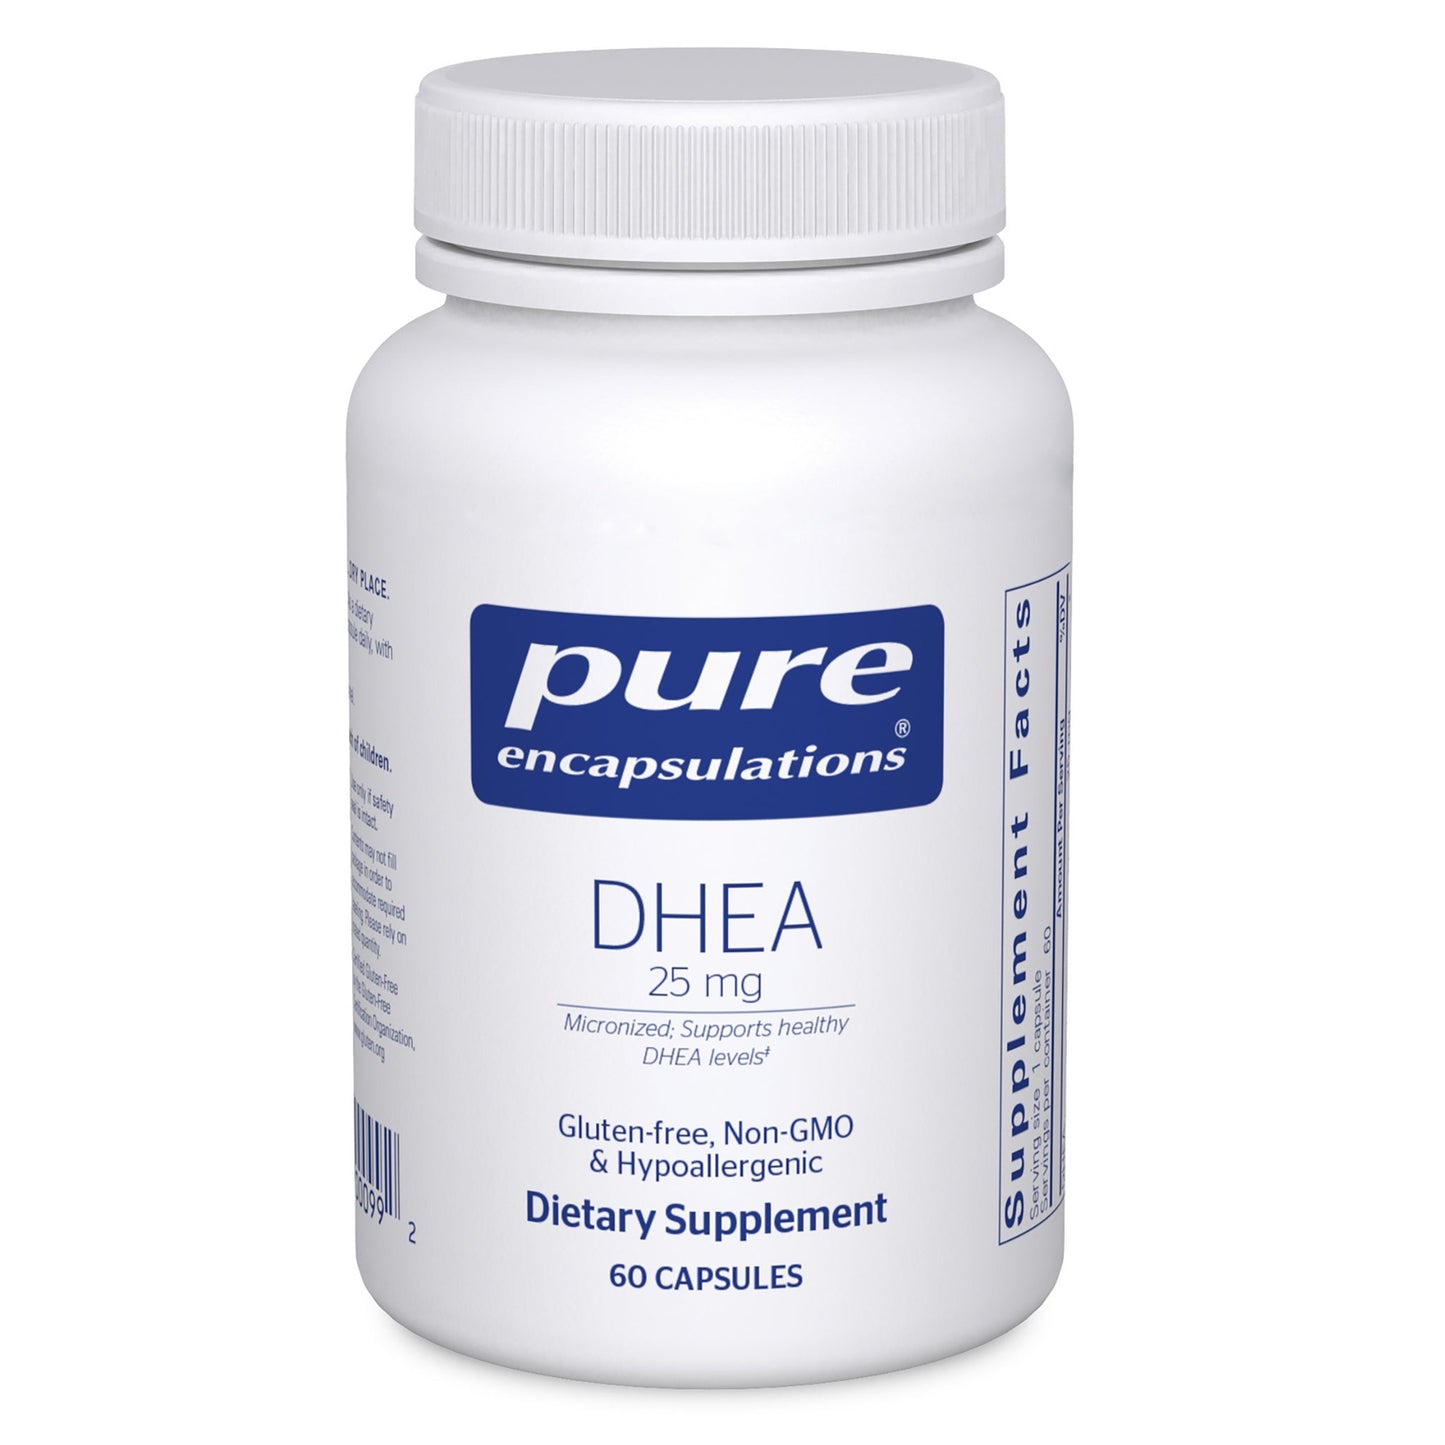 DHEA 25 mg.